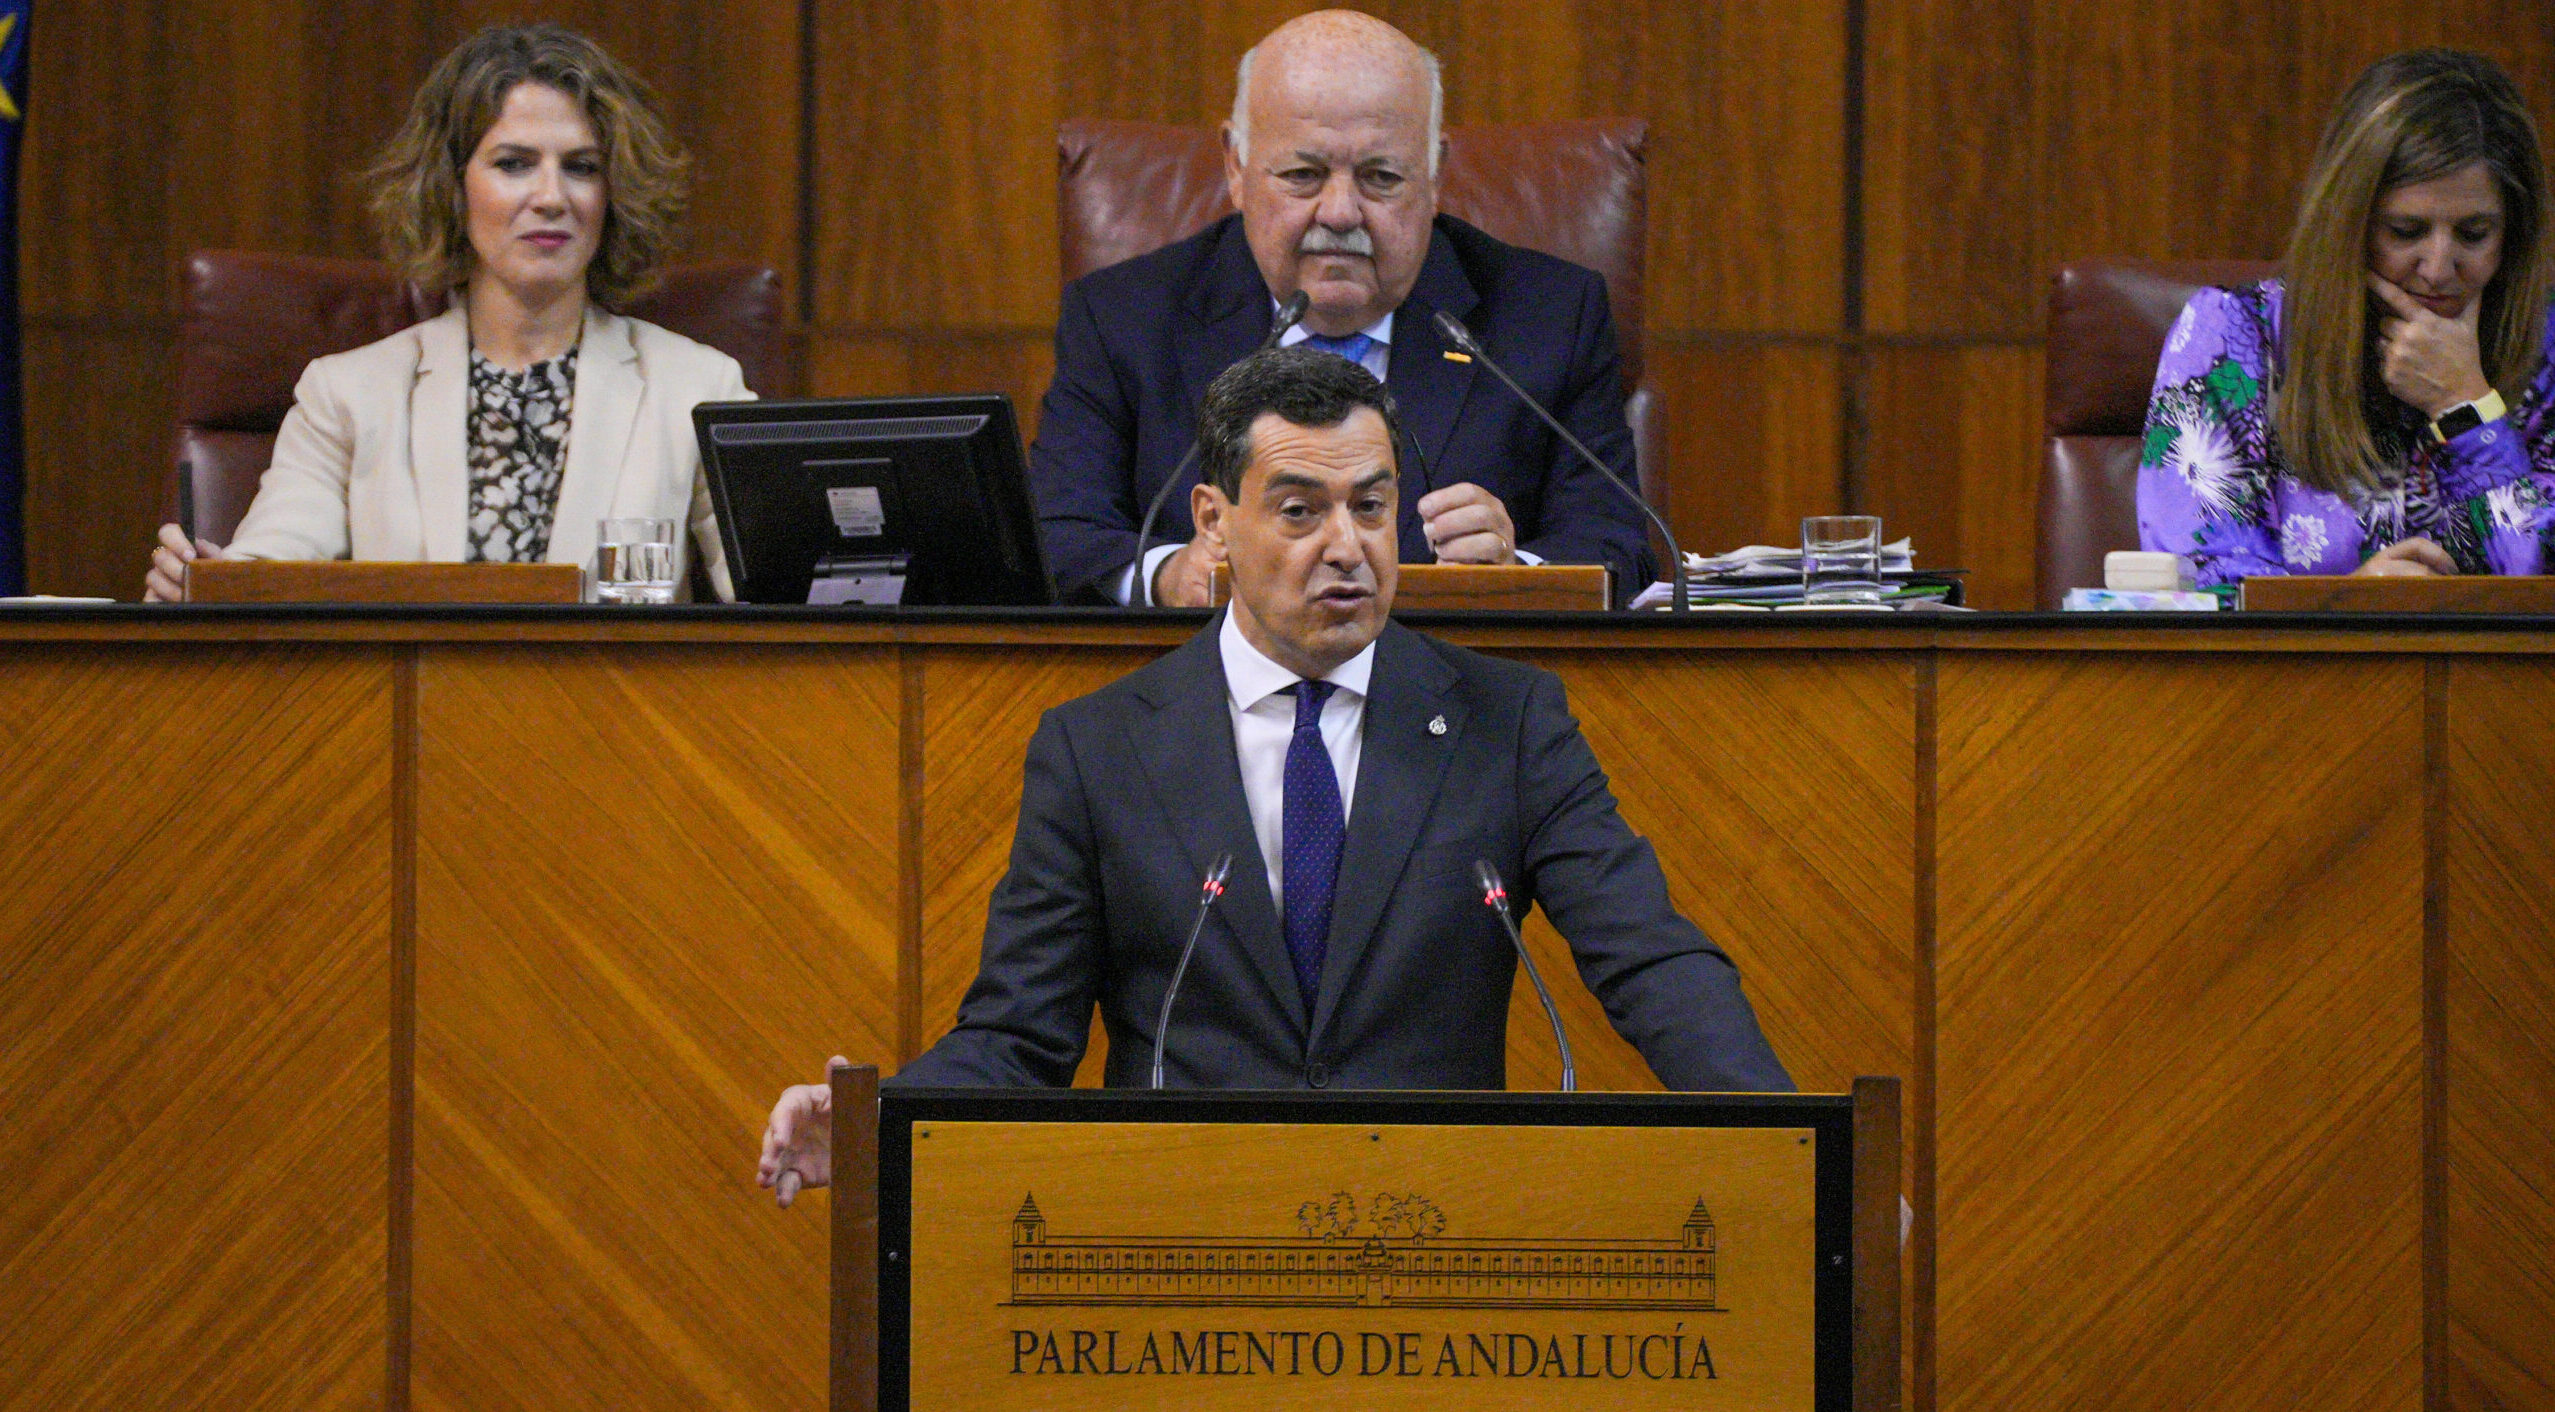 El parlamento andaluz aprueba la subida de casi un 20% del sueldo de Moreno Bonilla con la mayoría absoluta del PP